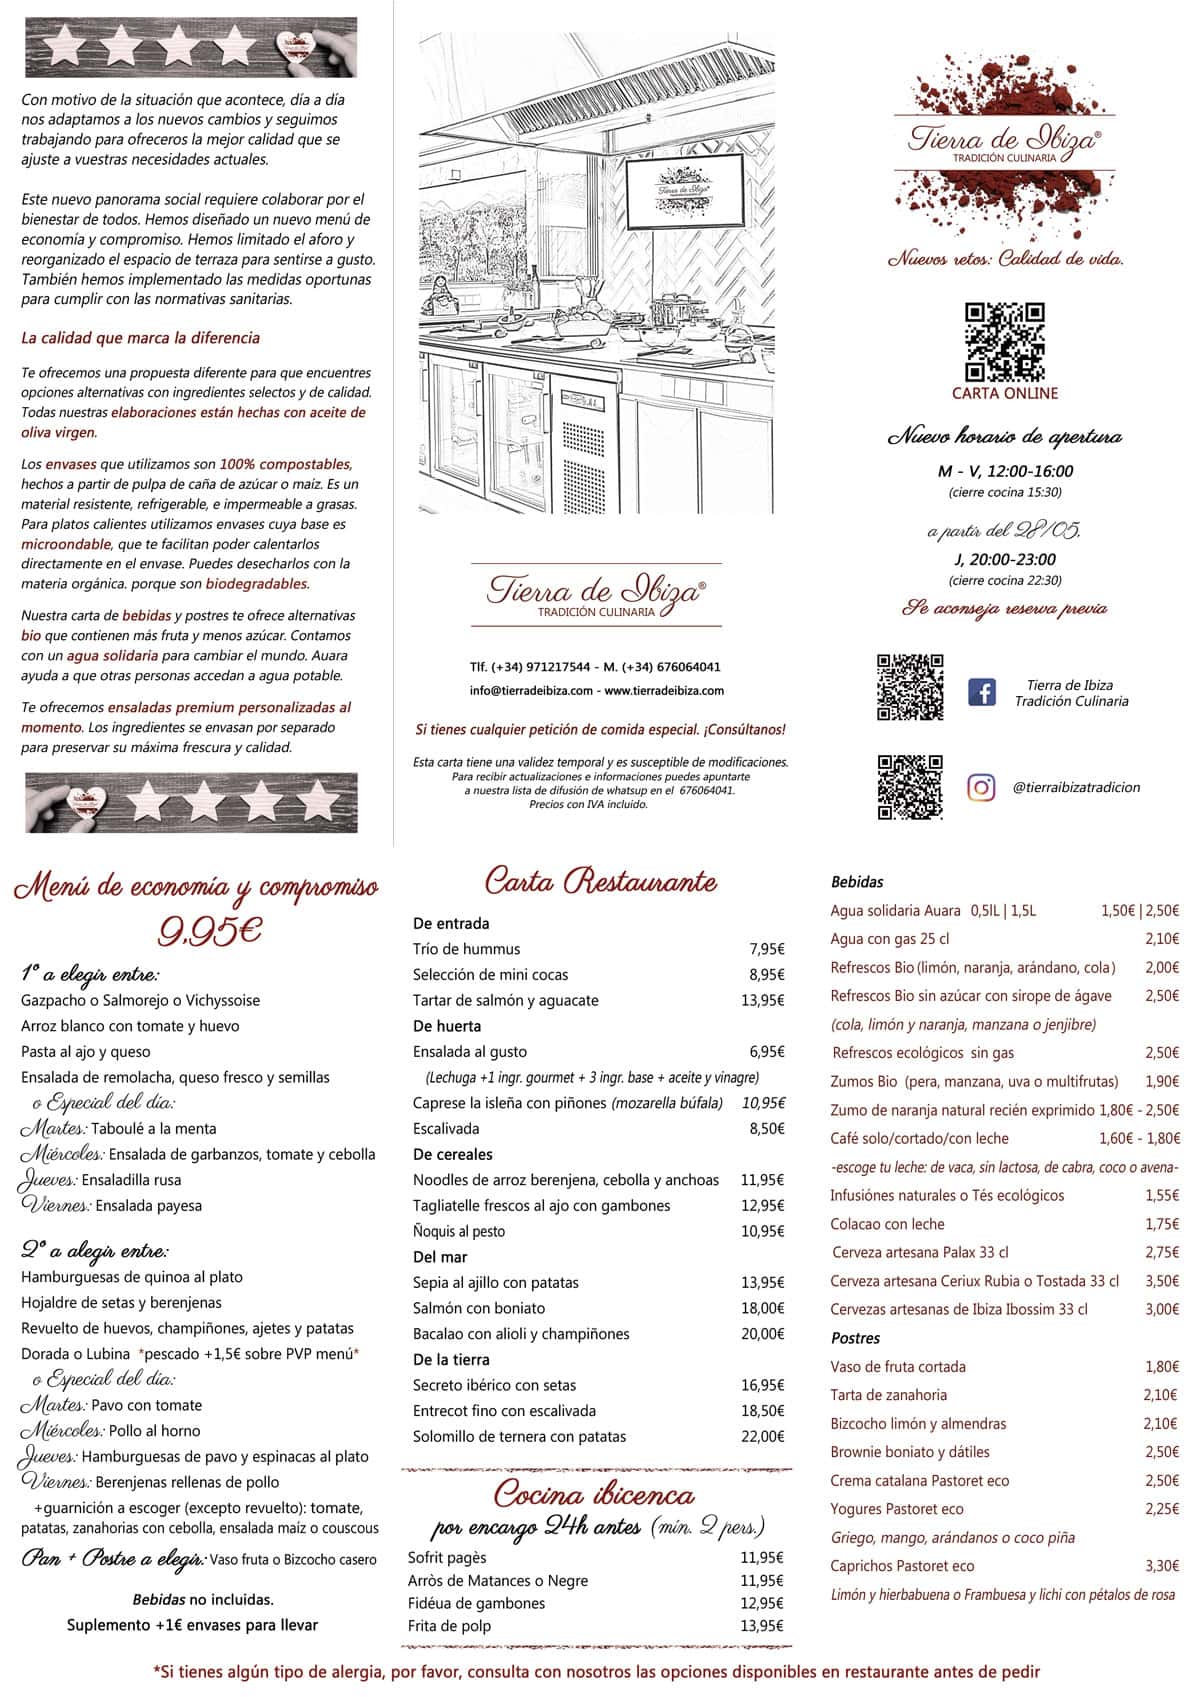 Carta-Tierra-de-Ibiza-tradicion culinaria 2020